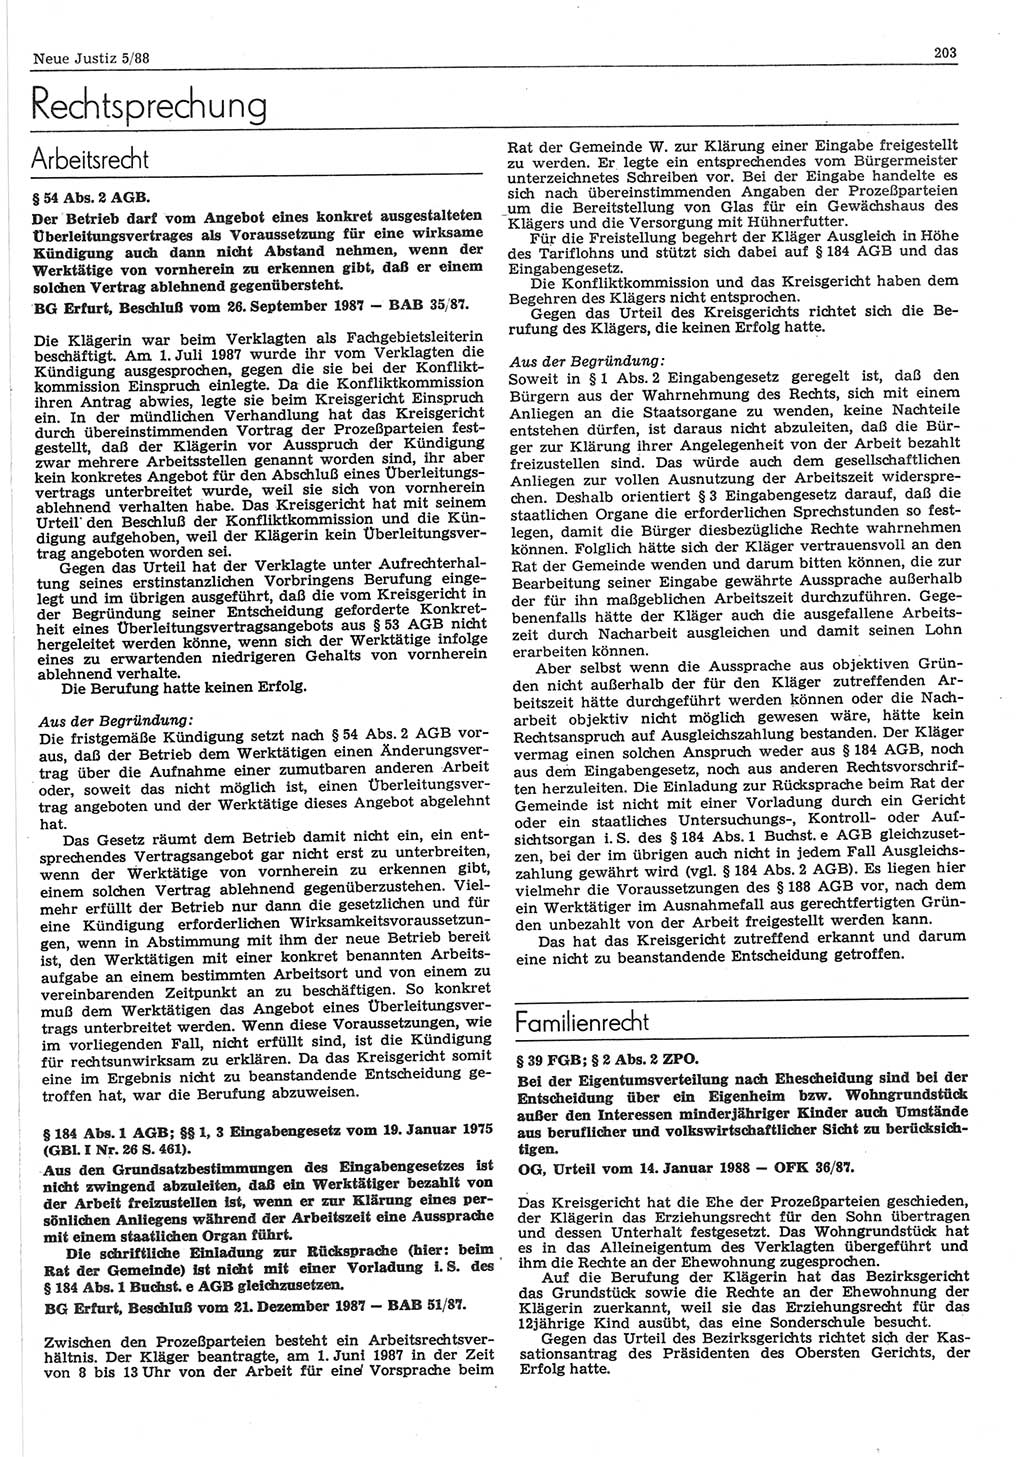 Neue Justiz (NJ), Zeitschrift für sozialistisches Recht und Gesetzlichkeit [Deutsche Demokratische Republik (DDR)], 42. Jahrgang 1988, Seite 203 (NJ DDR 1988, S. 203)